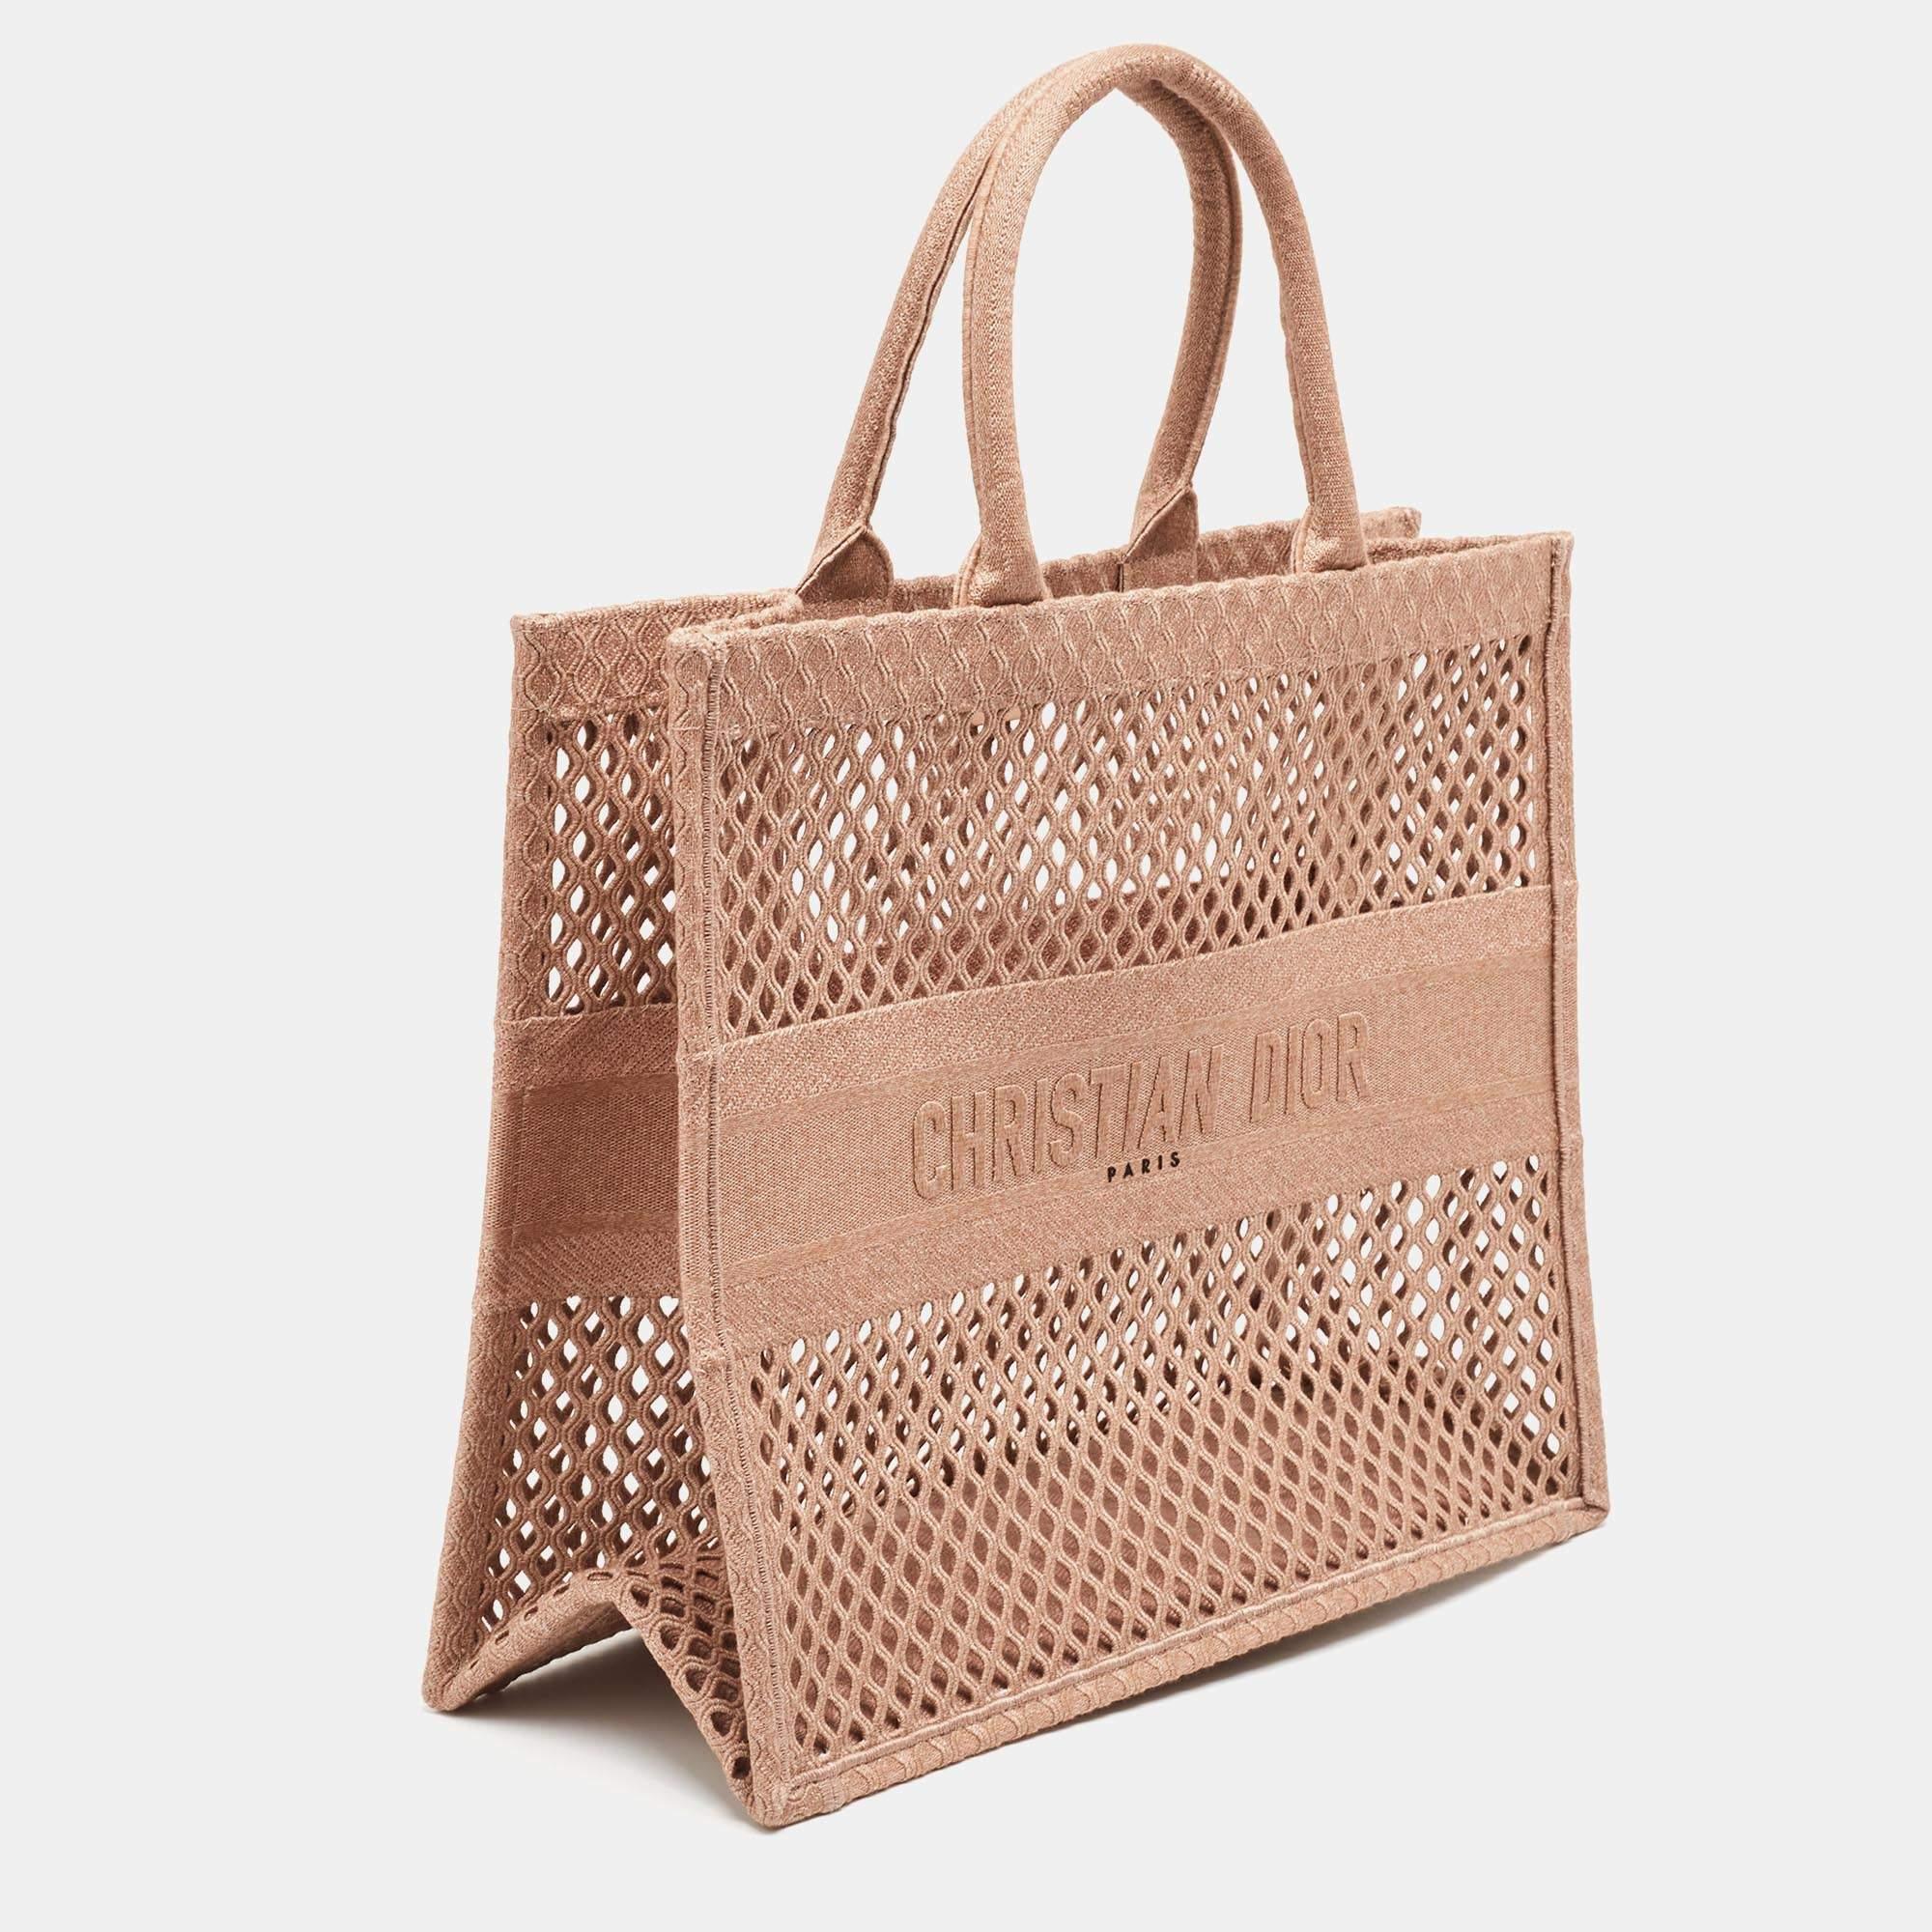 Transportez tout ce dont vous avez besoin avec style grâce à ce fourre-tout Dior Book. Fabriqué à partir des meilleurs matériaux, c'est un accessoire qui promet un style et une utilisation durables.

